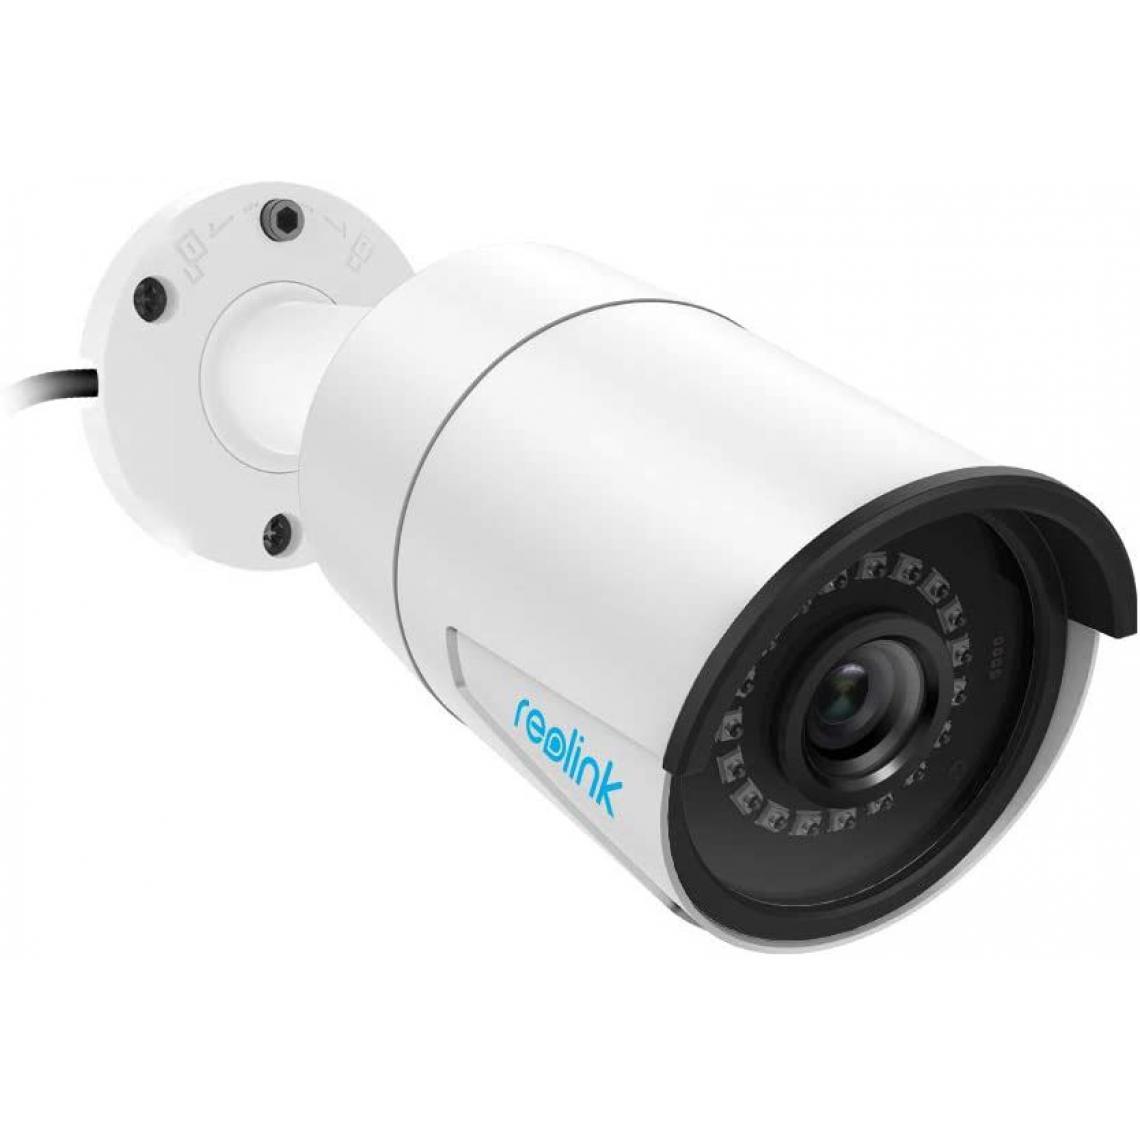 Reolink - Caméra IP 5MP Extérieur PoE -RLC-410-5MP - Caméra de Surveillance Vision Nocturne IR 30m, Détection de Mouvement et Etanche IP66 - Caméra de surveillance connectée